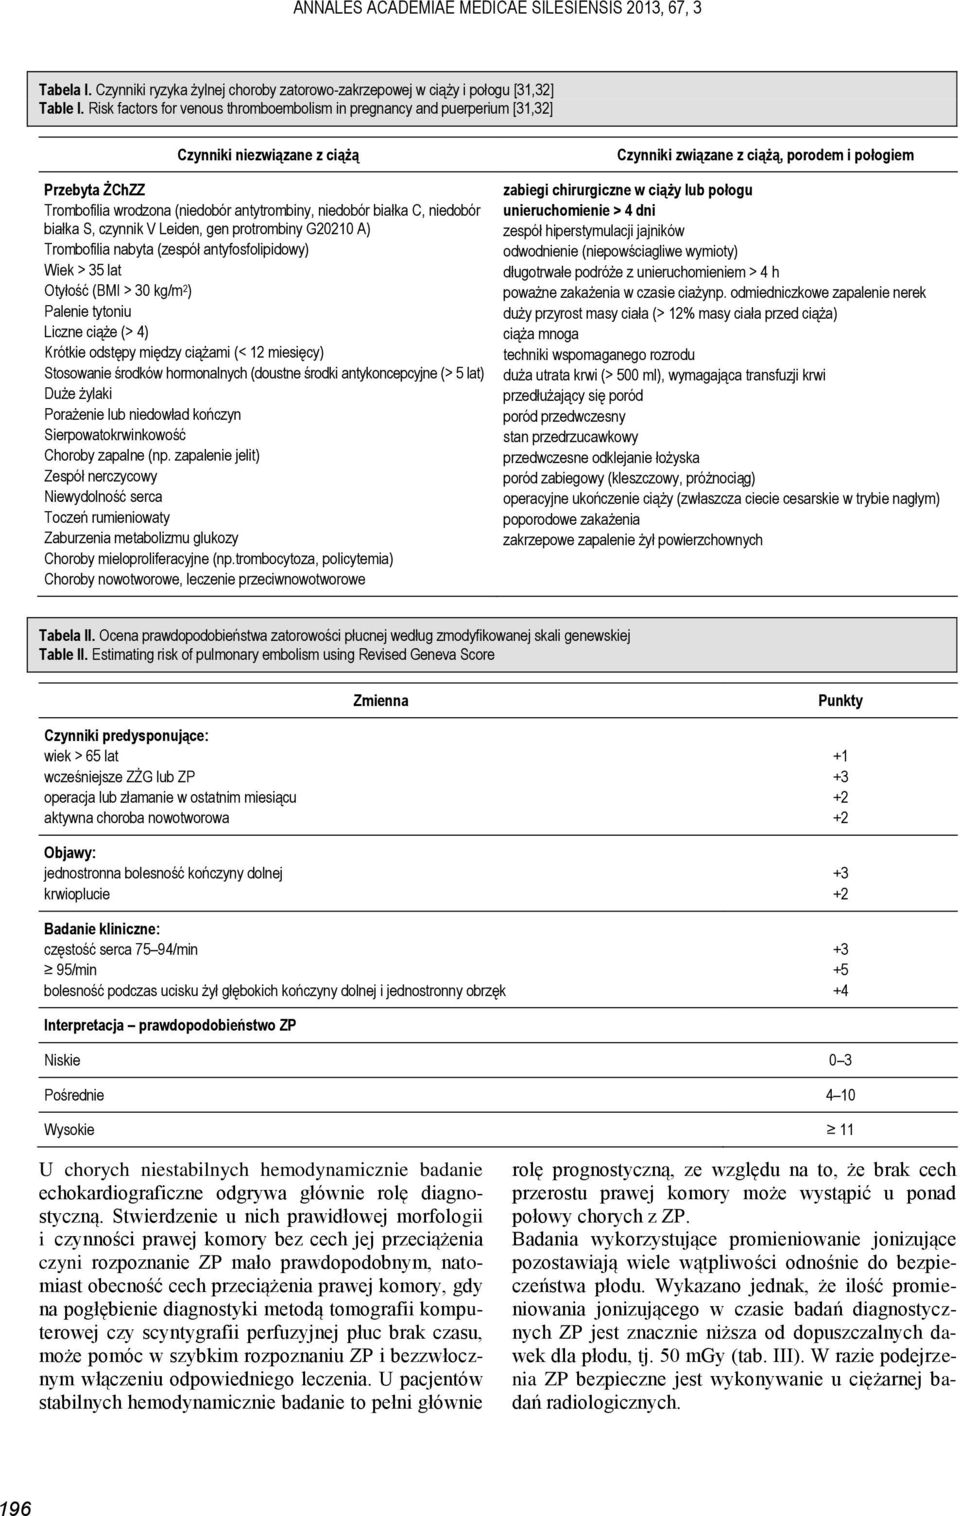 S, czynnik V Leiden, gen protrombiny G20210 A) Trombofilia nabyta (zespół antyfosfolipidowy) Wiek > 35 lat Otyłość (BMI > 30 kg/m 2 ) Palenie tytoniu Liczne ciąże (> 4) Krótkie odstępy między ciążami